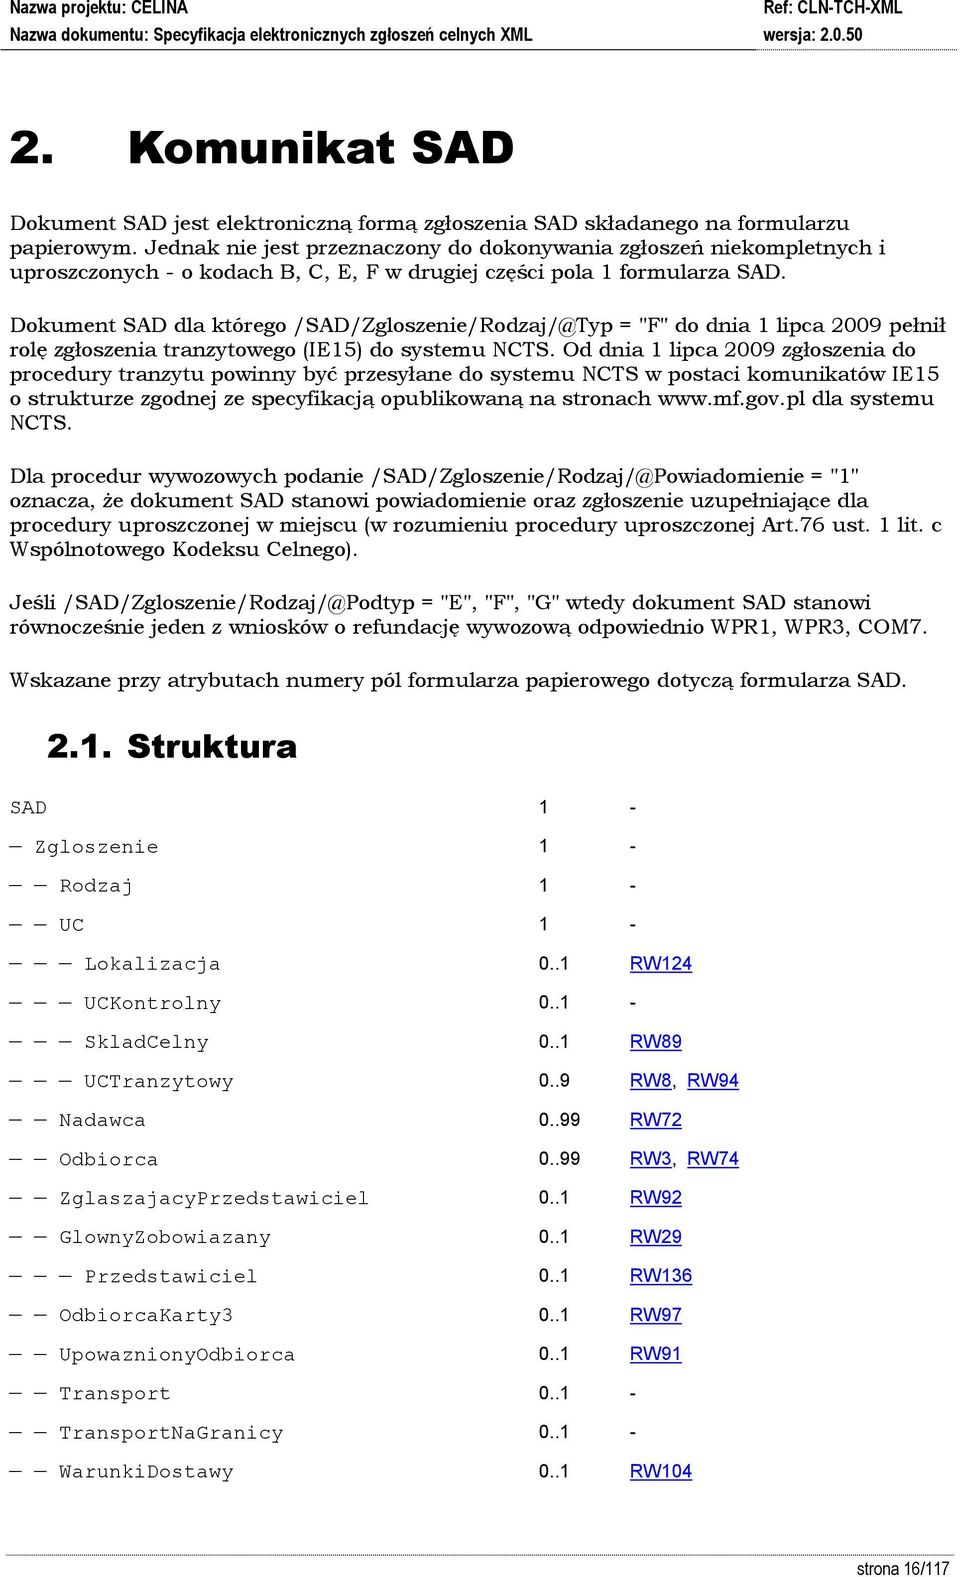 Dokument SAD dla którego /SAD/Zgloszenie/Rodzaj/@Typ = "F" do dnia 1 lipca 2009 pełnił rolę zgłoszenia tranzytowego (IE15) do systemu NCTS.